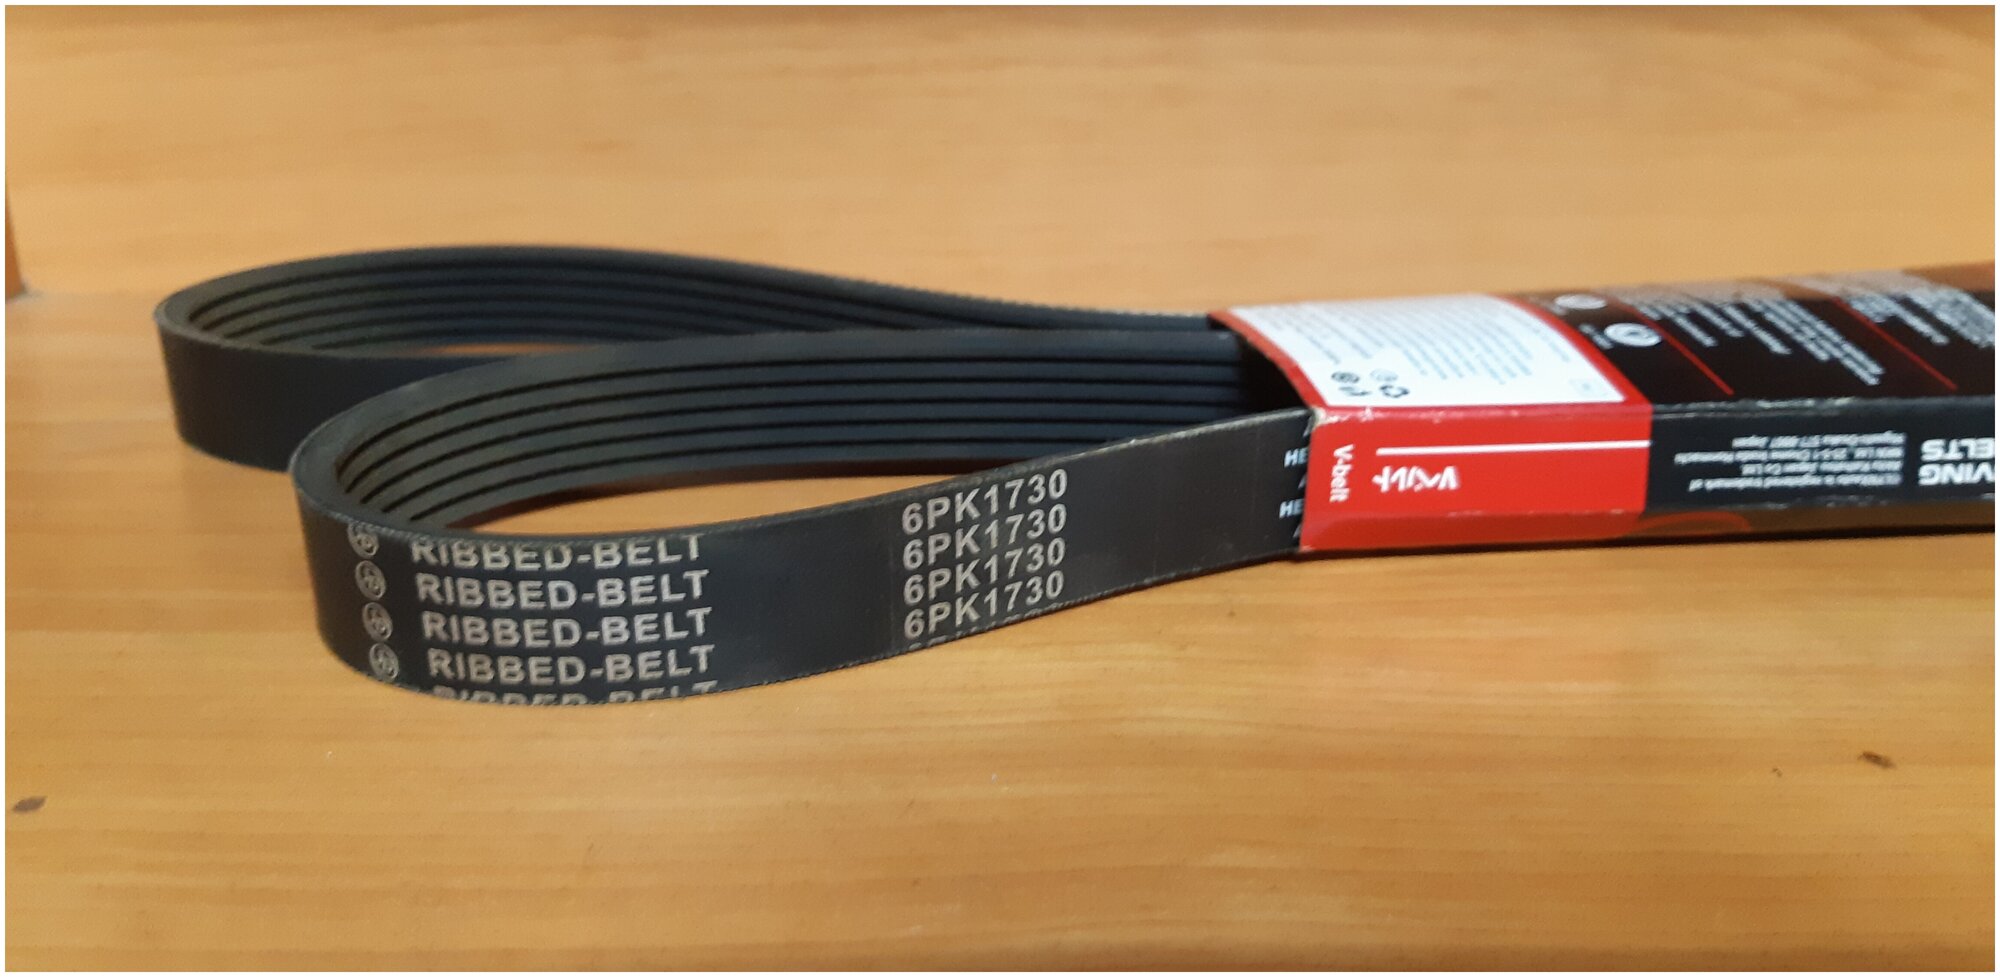 Ремень поликлиновый 6PK1730 (Ribbed-belt)